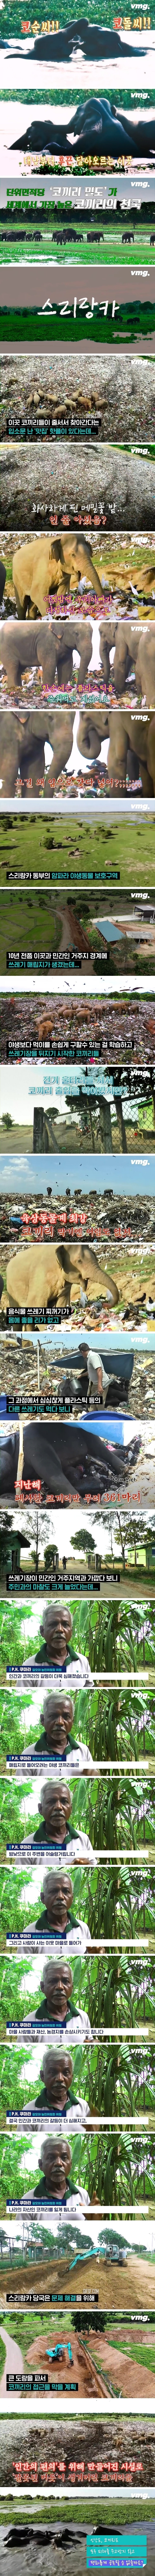 쓰레기 무덤을 뒤지는 스리랑카 코끼리들.jpg